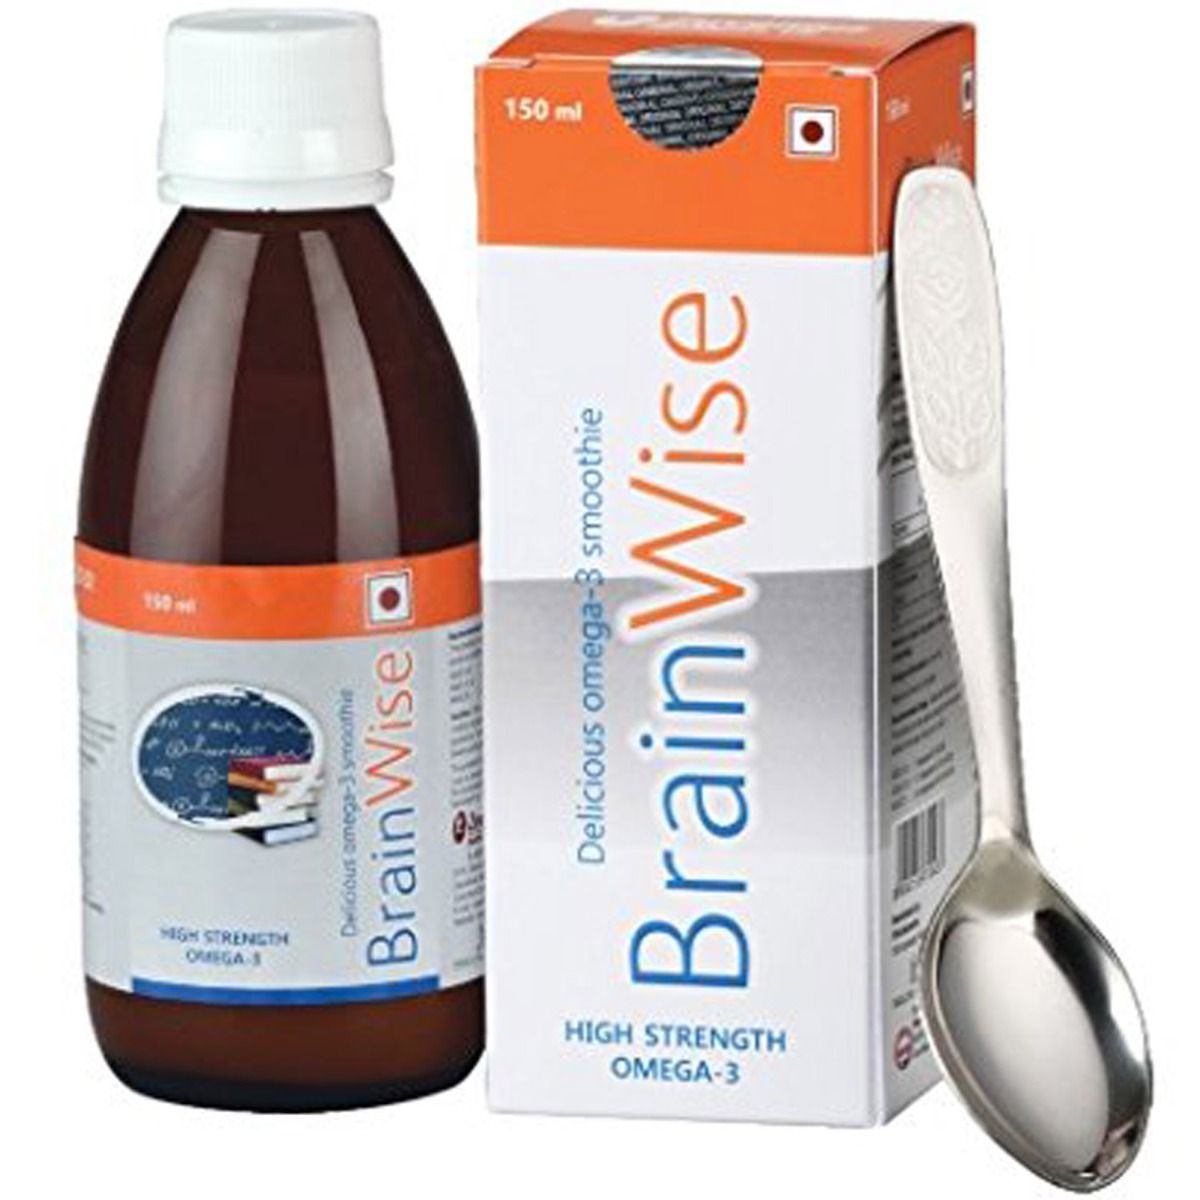 Buy Brainwise Syrup 150 ml Online